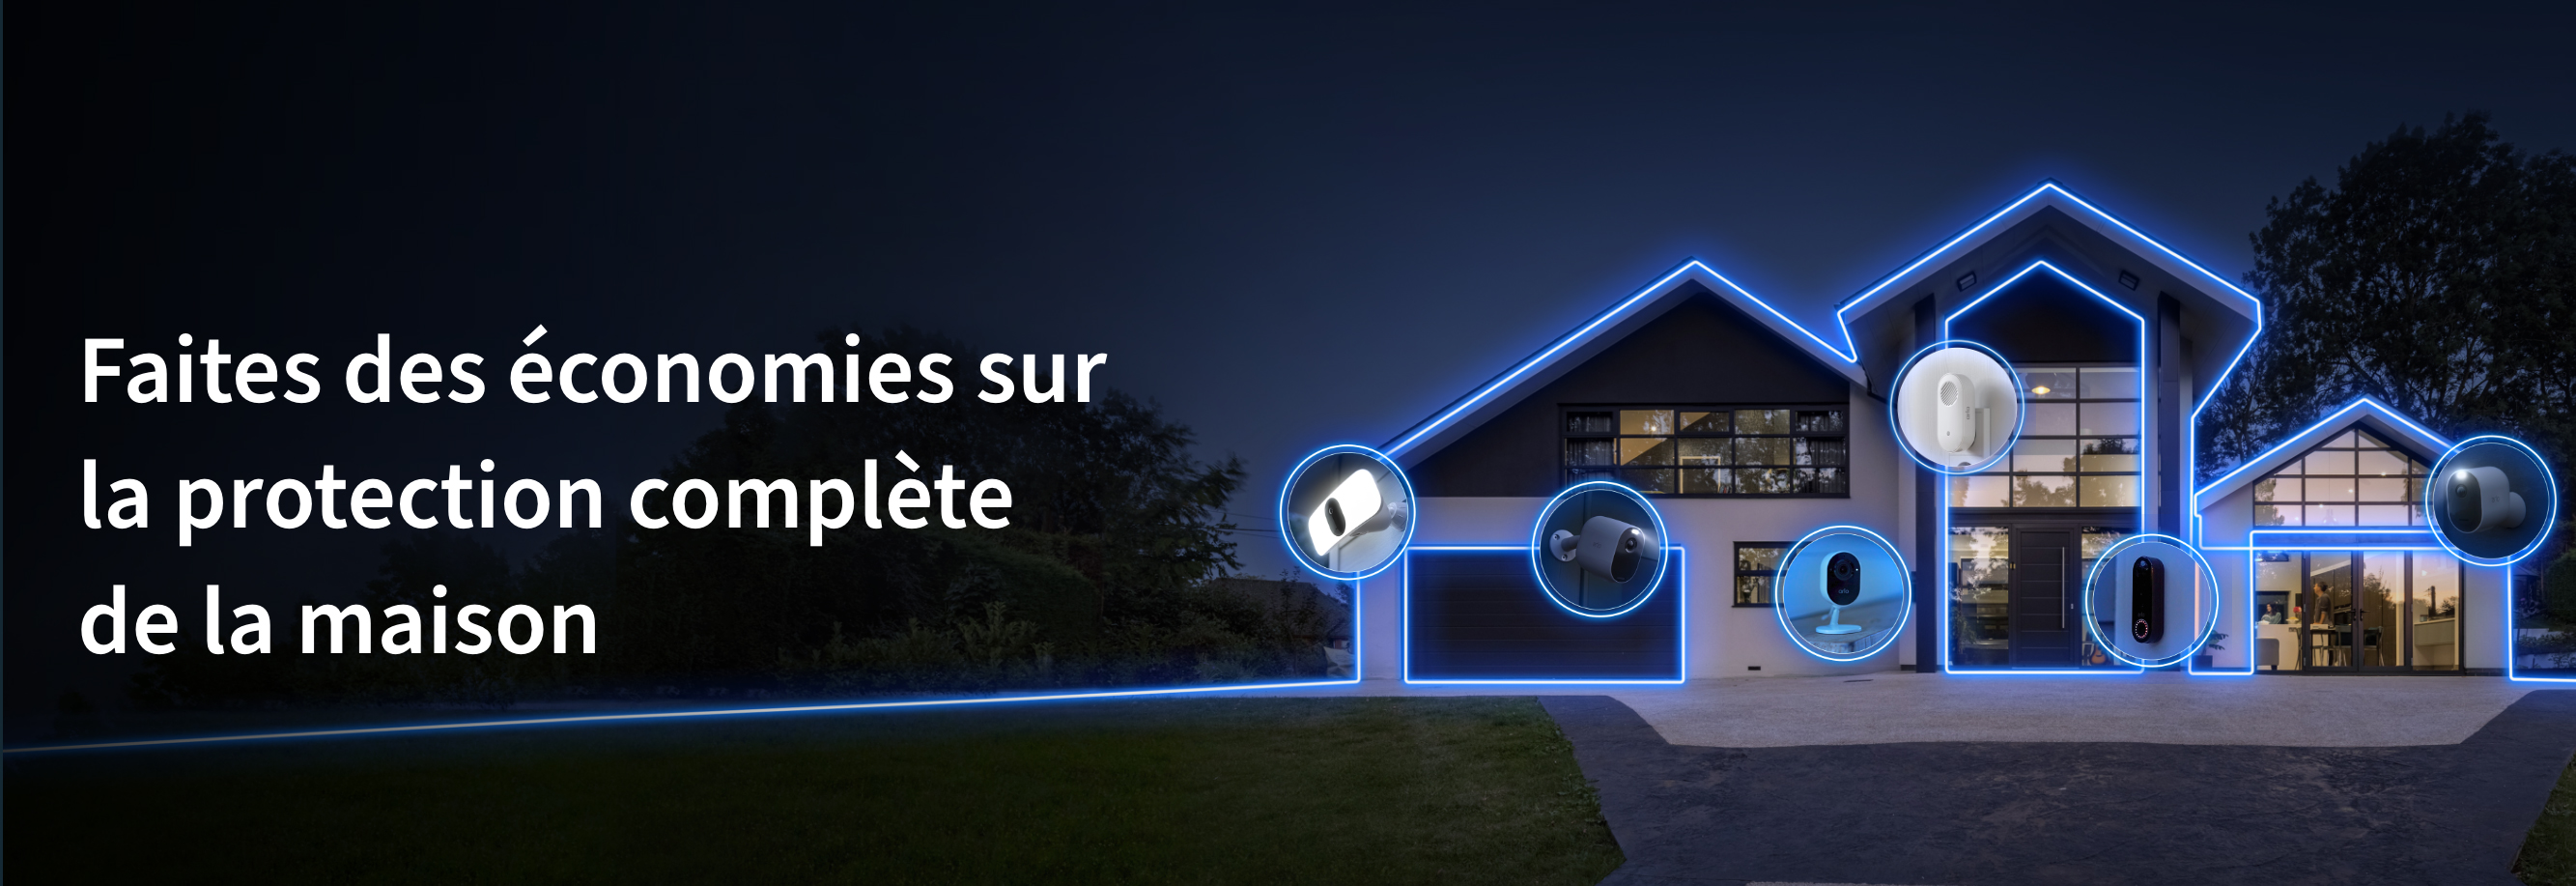 Une vue nocturne d'une maison entourée d'un bouclier de lumière transmet les caméras Arlo qui la protègent